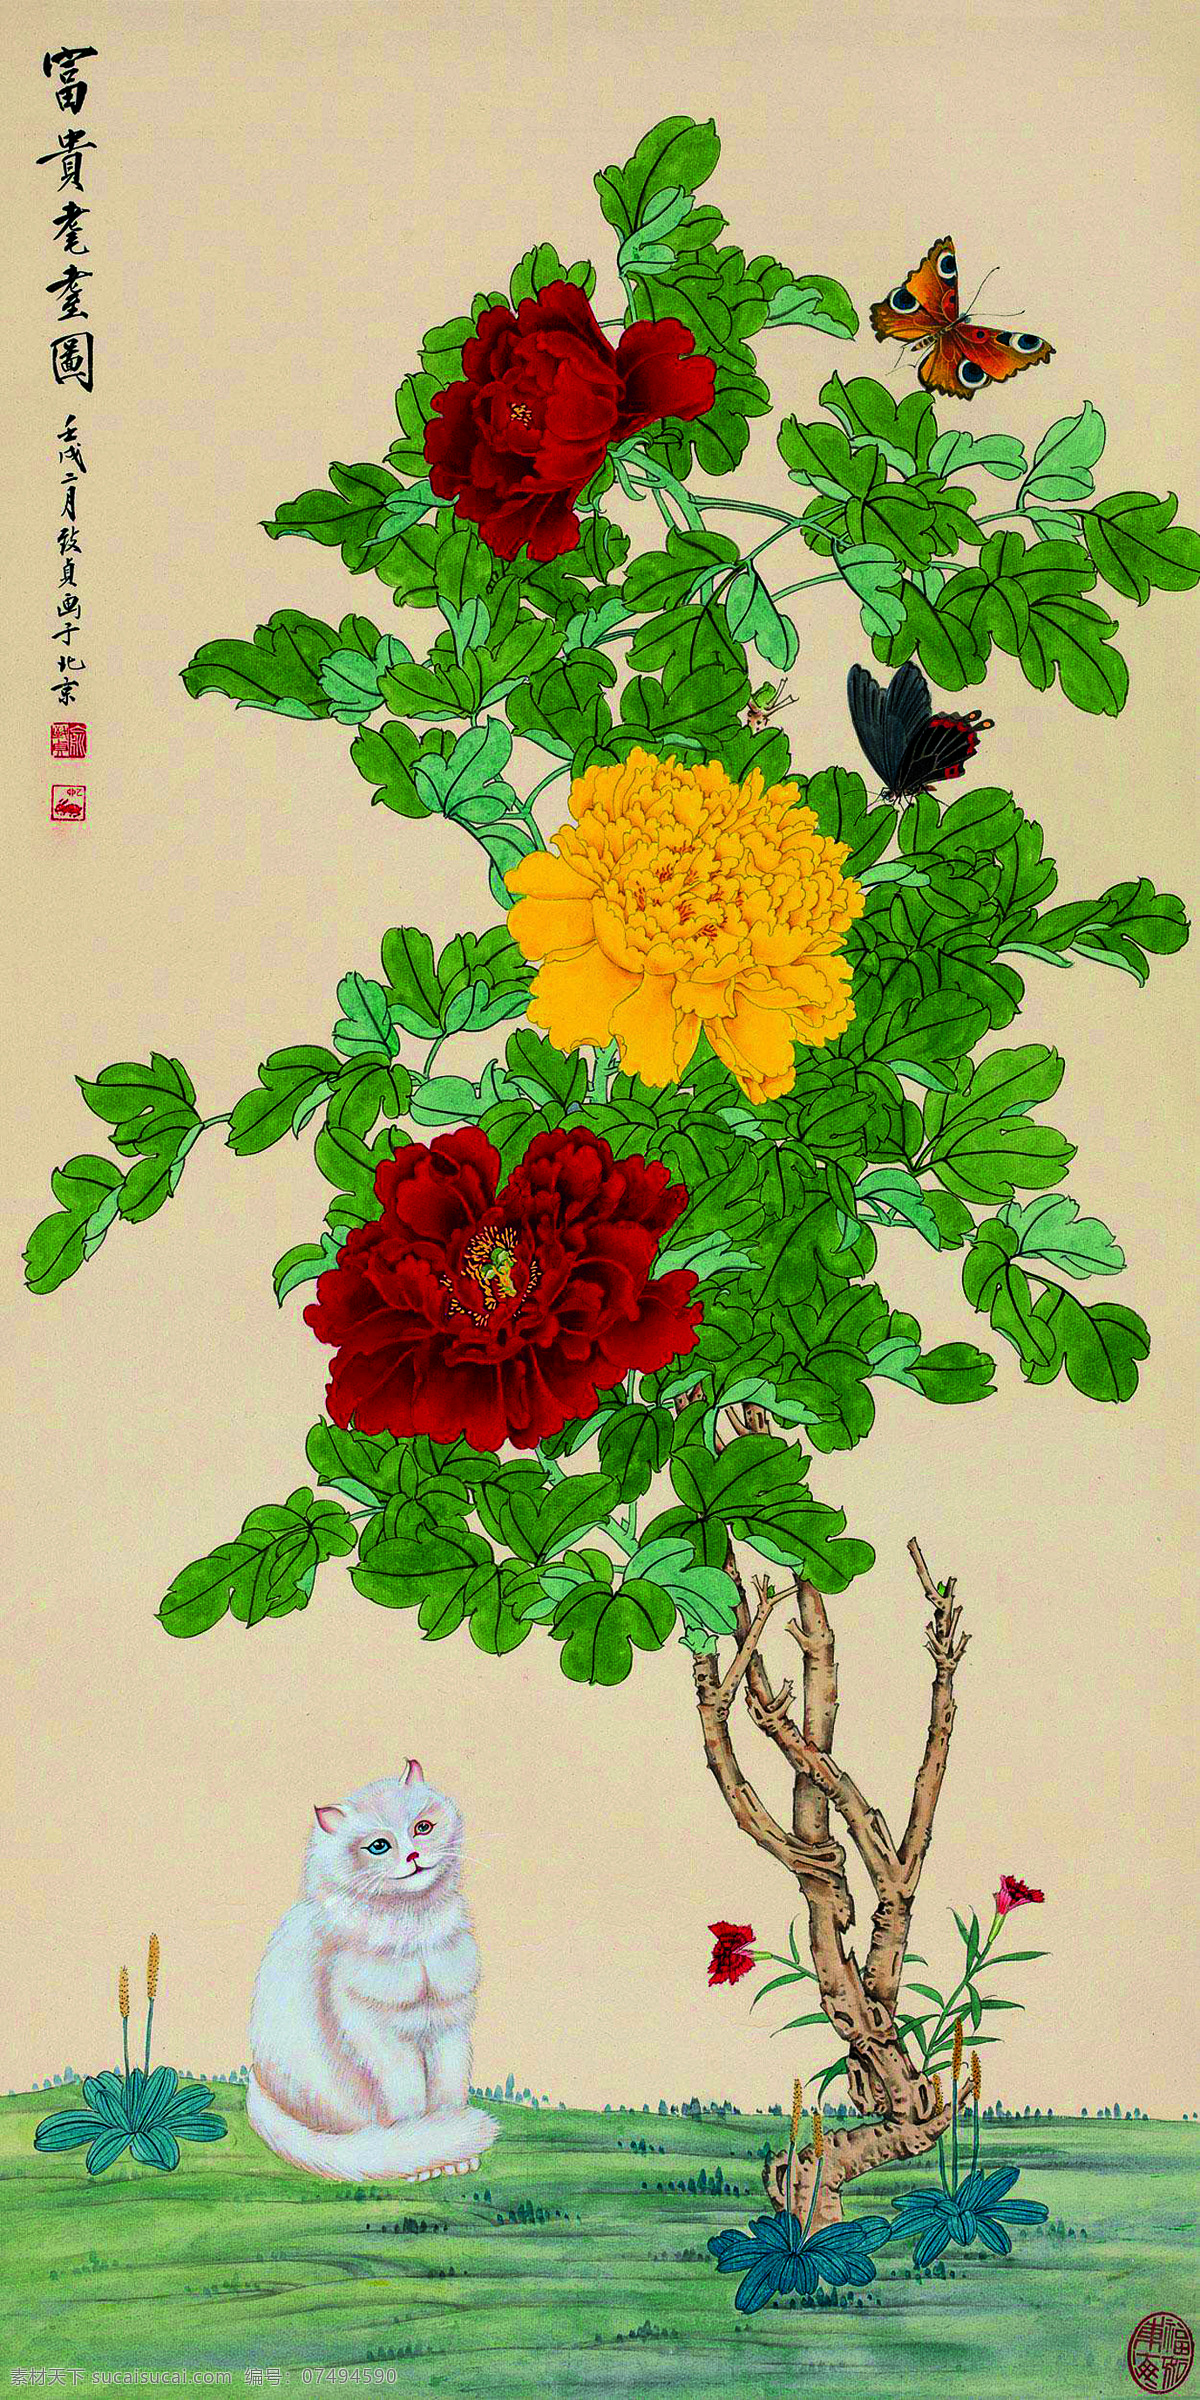 富贵图 美术 中国画 工笔画 牡丹花 牡丹树 白猫 国画艺术 绘画书法 文化艺术